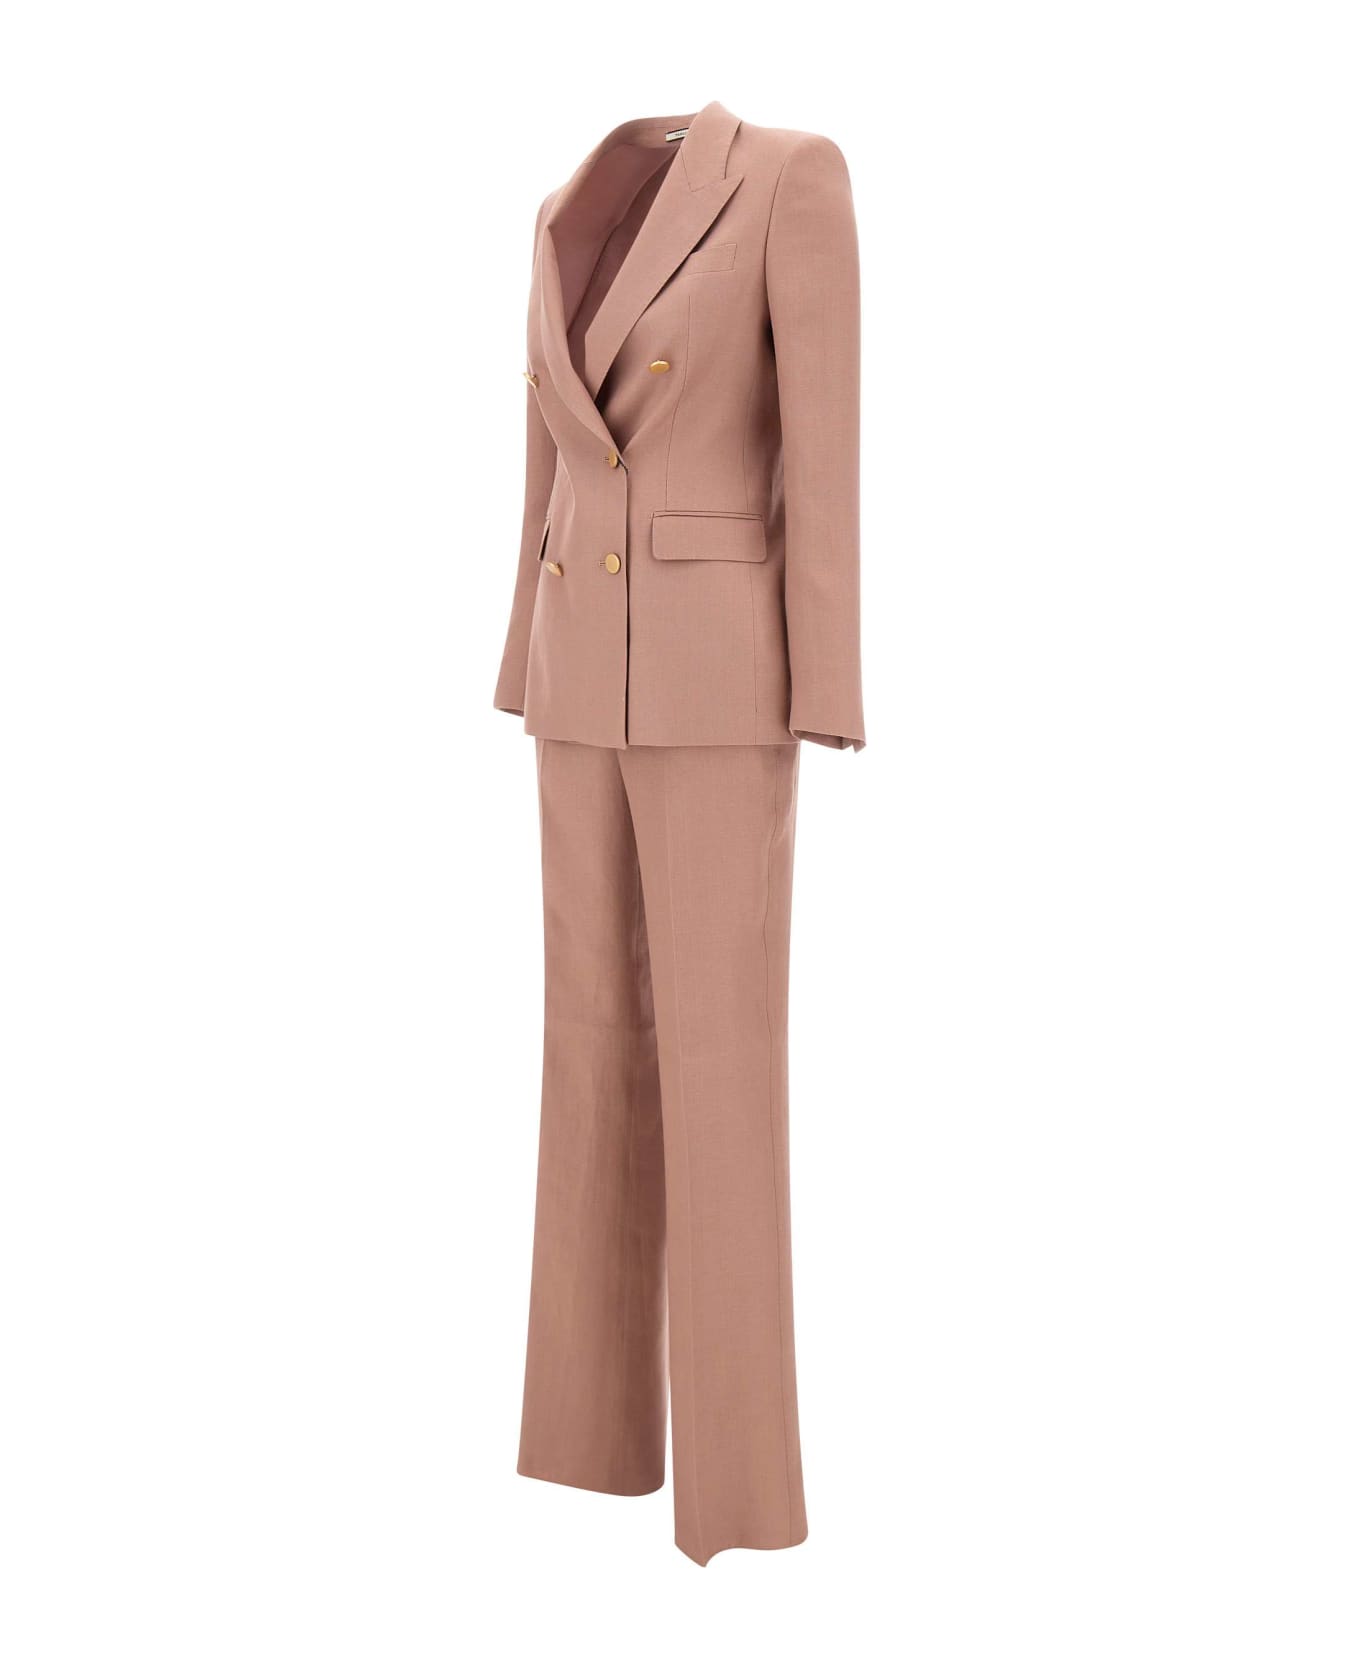 Tagliatore "parigi" Linen Two-piece Suit - PINK